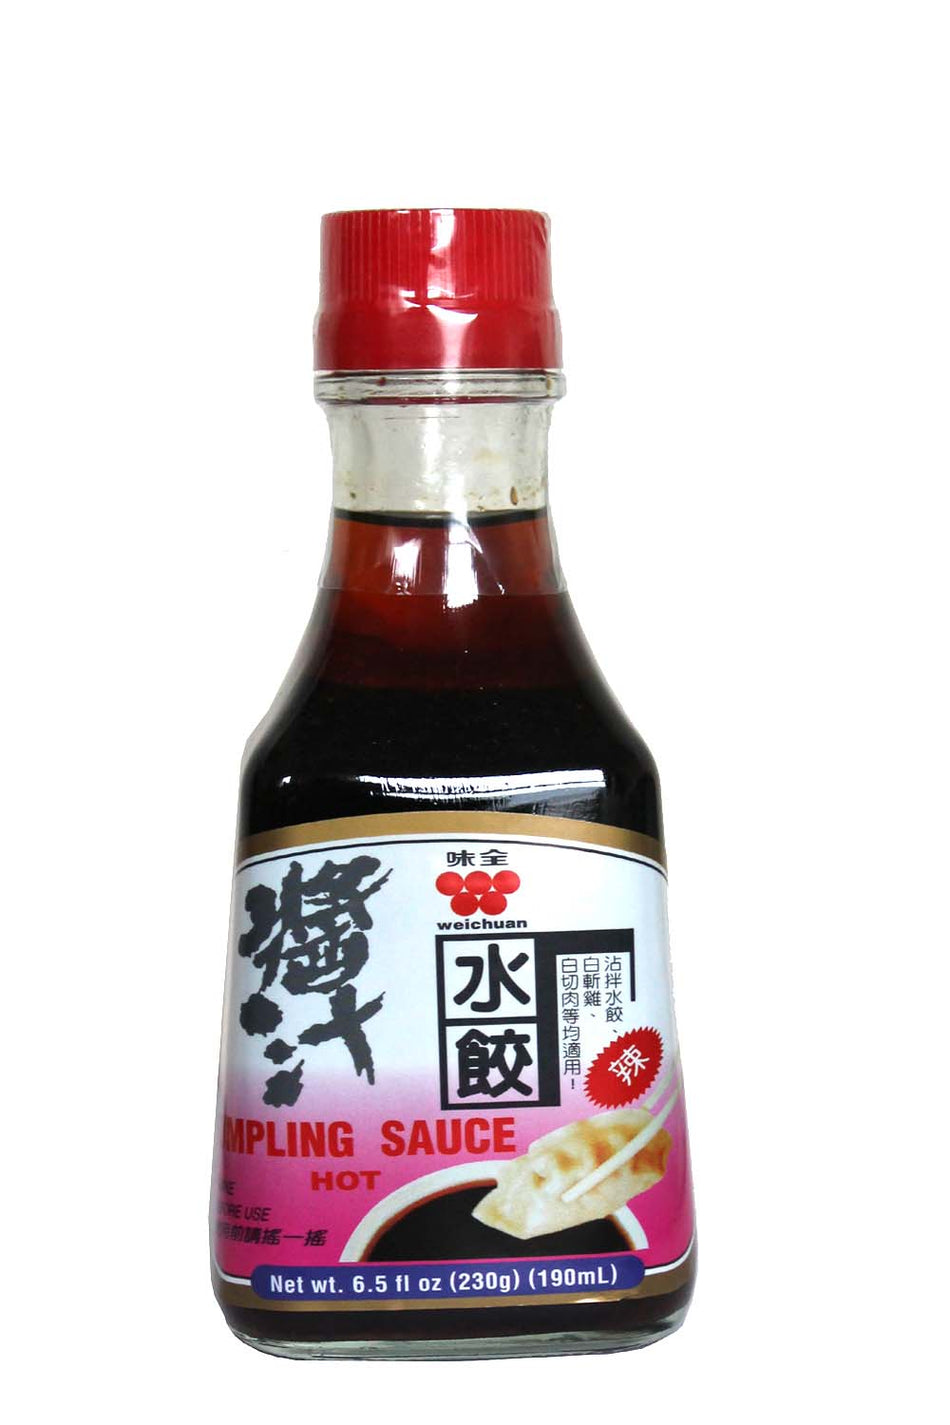 Wei chuan Dumpling Sauce